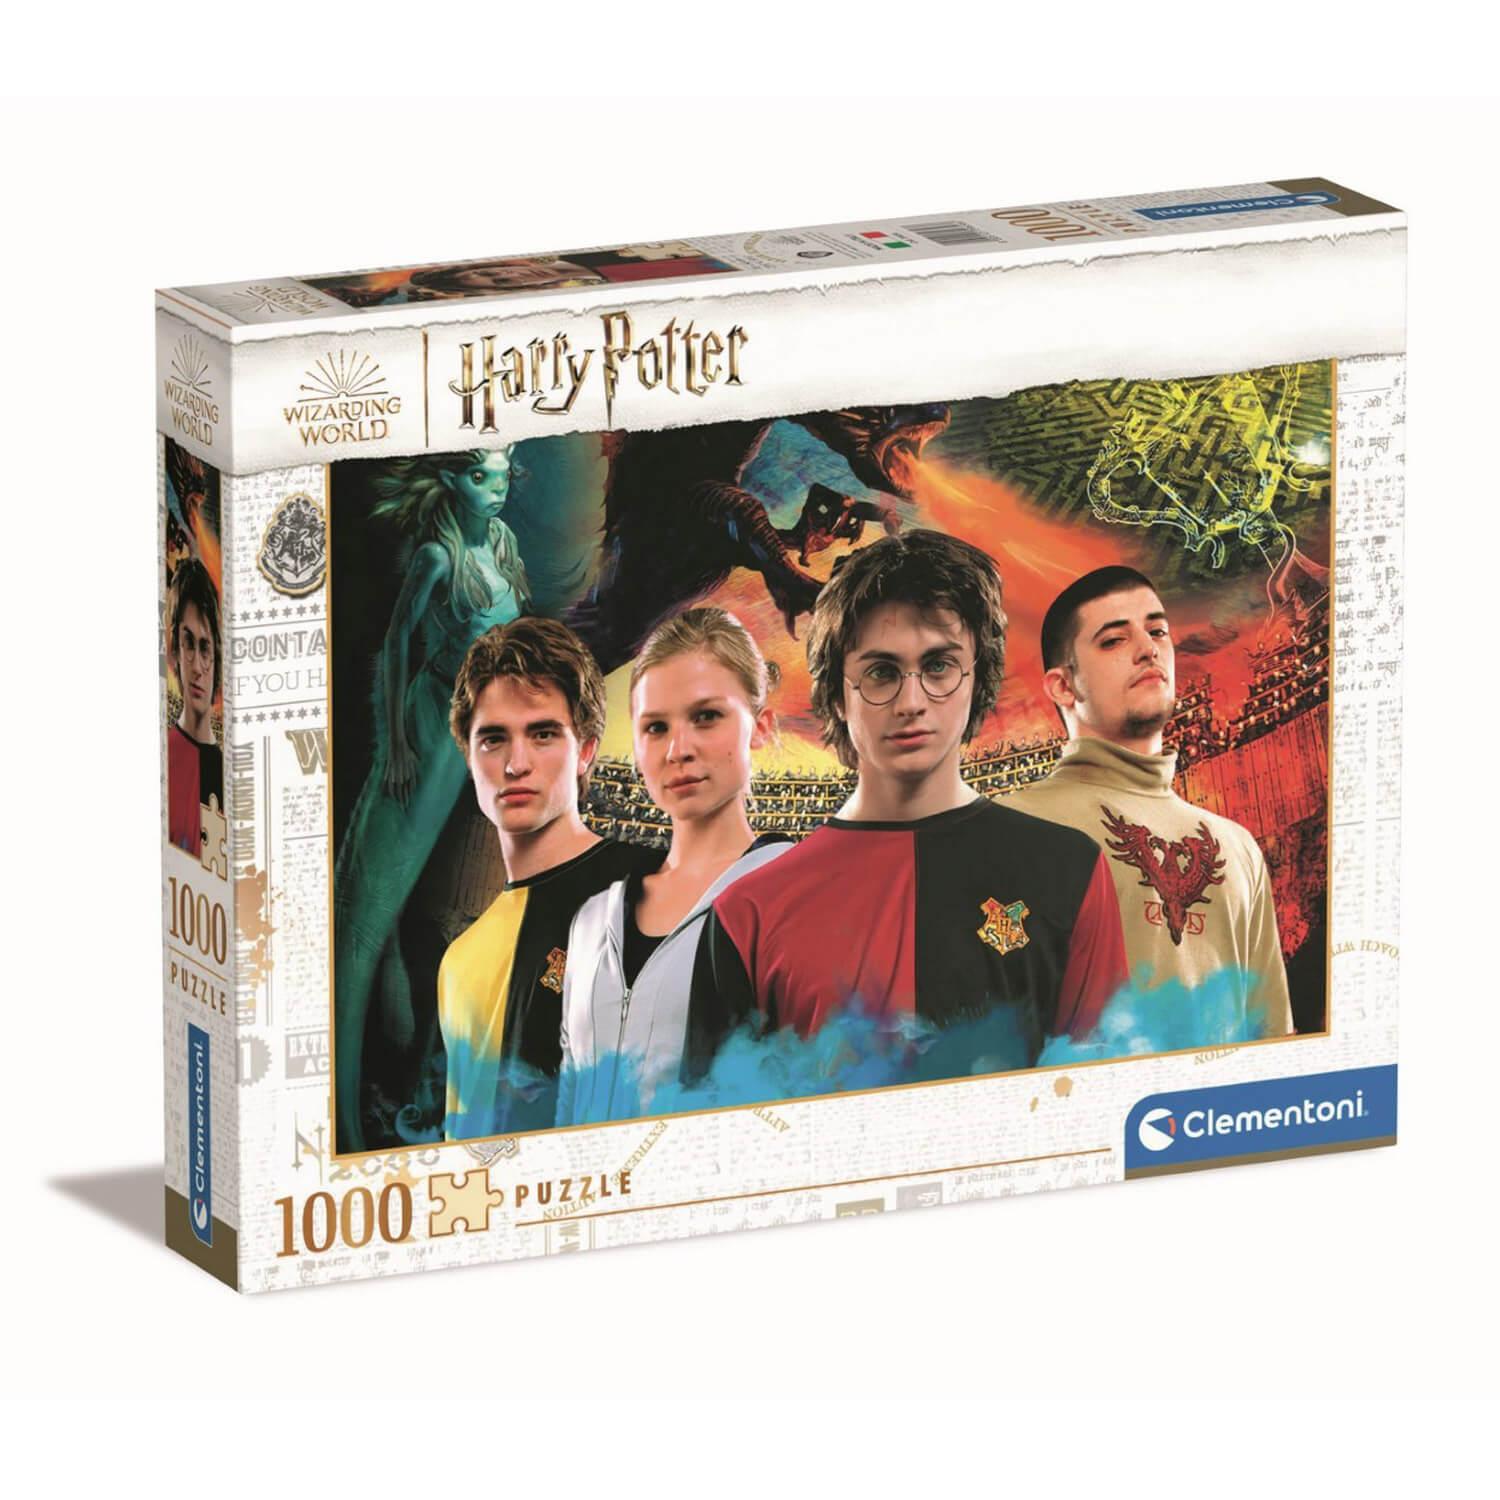 Puzzle 1000 Piezas | Harry Potter y El Cáliz de Fuego Cle...